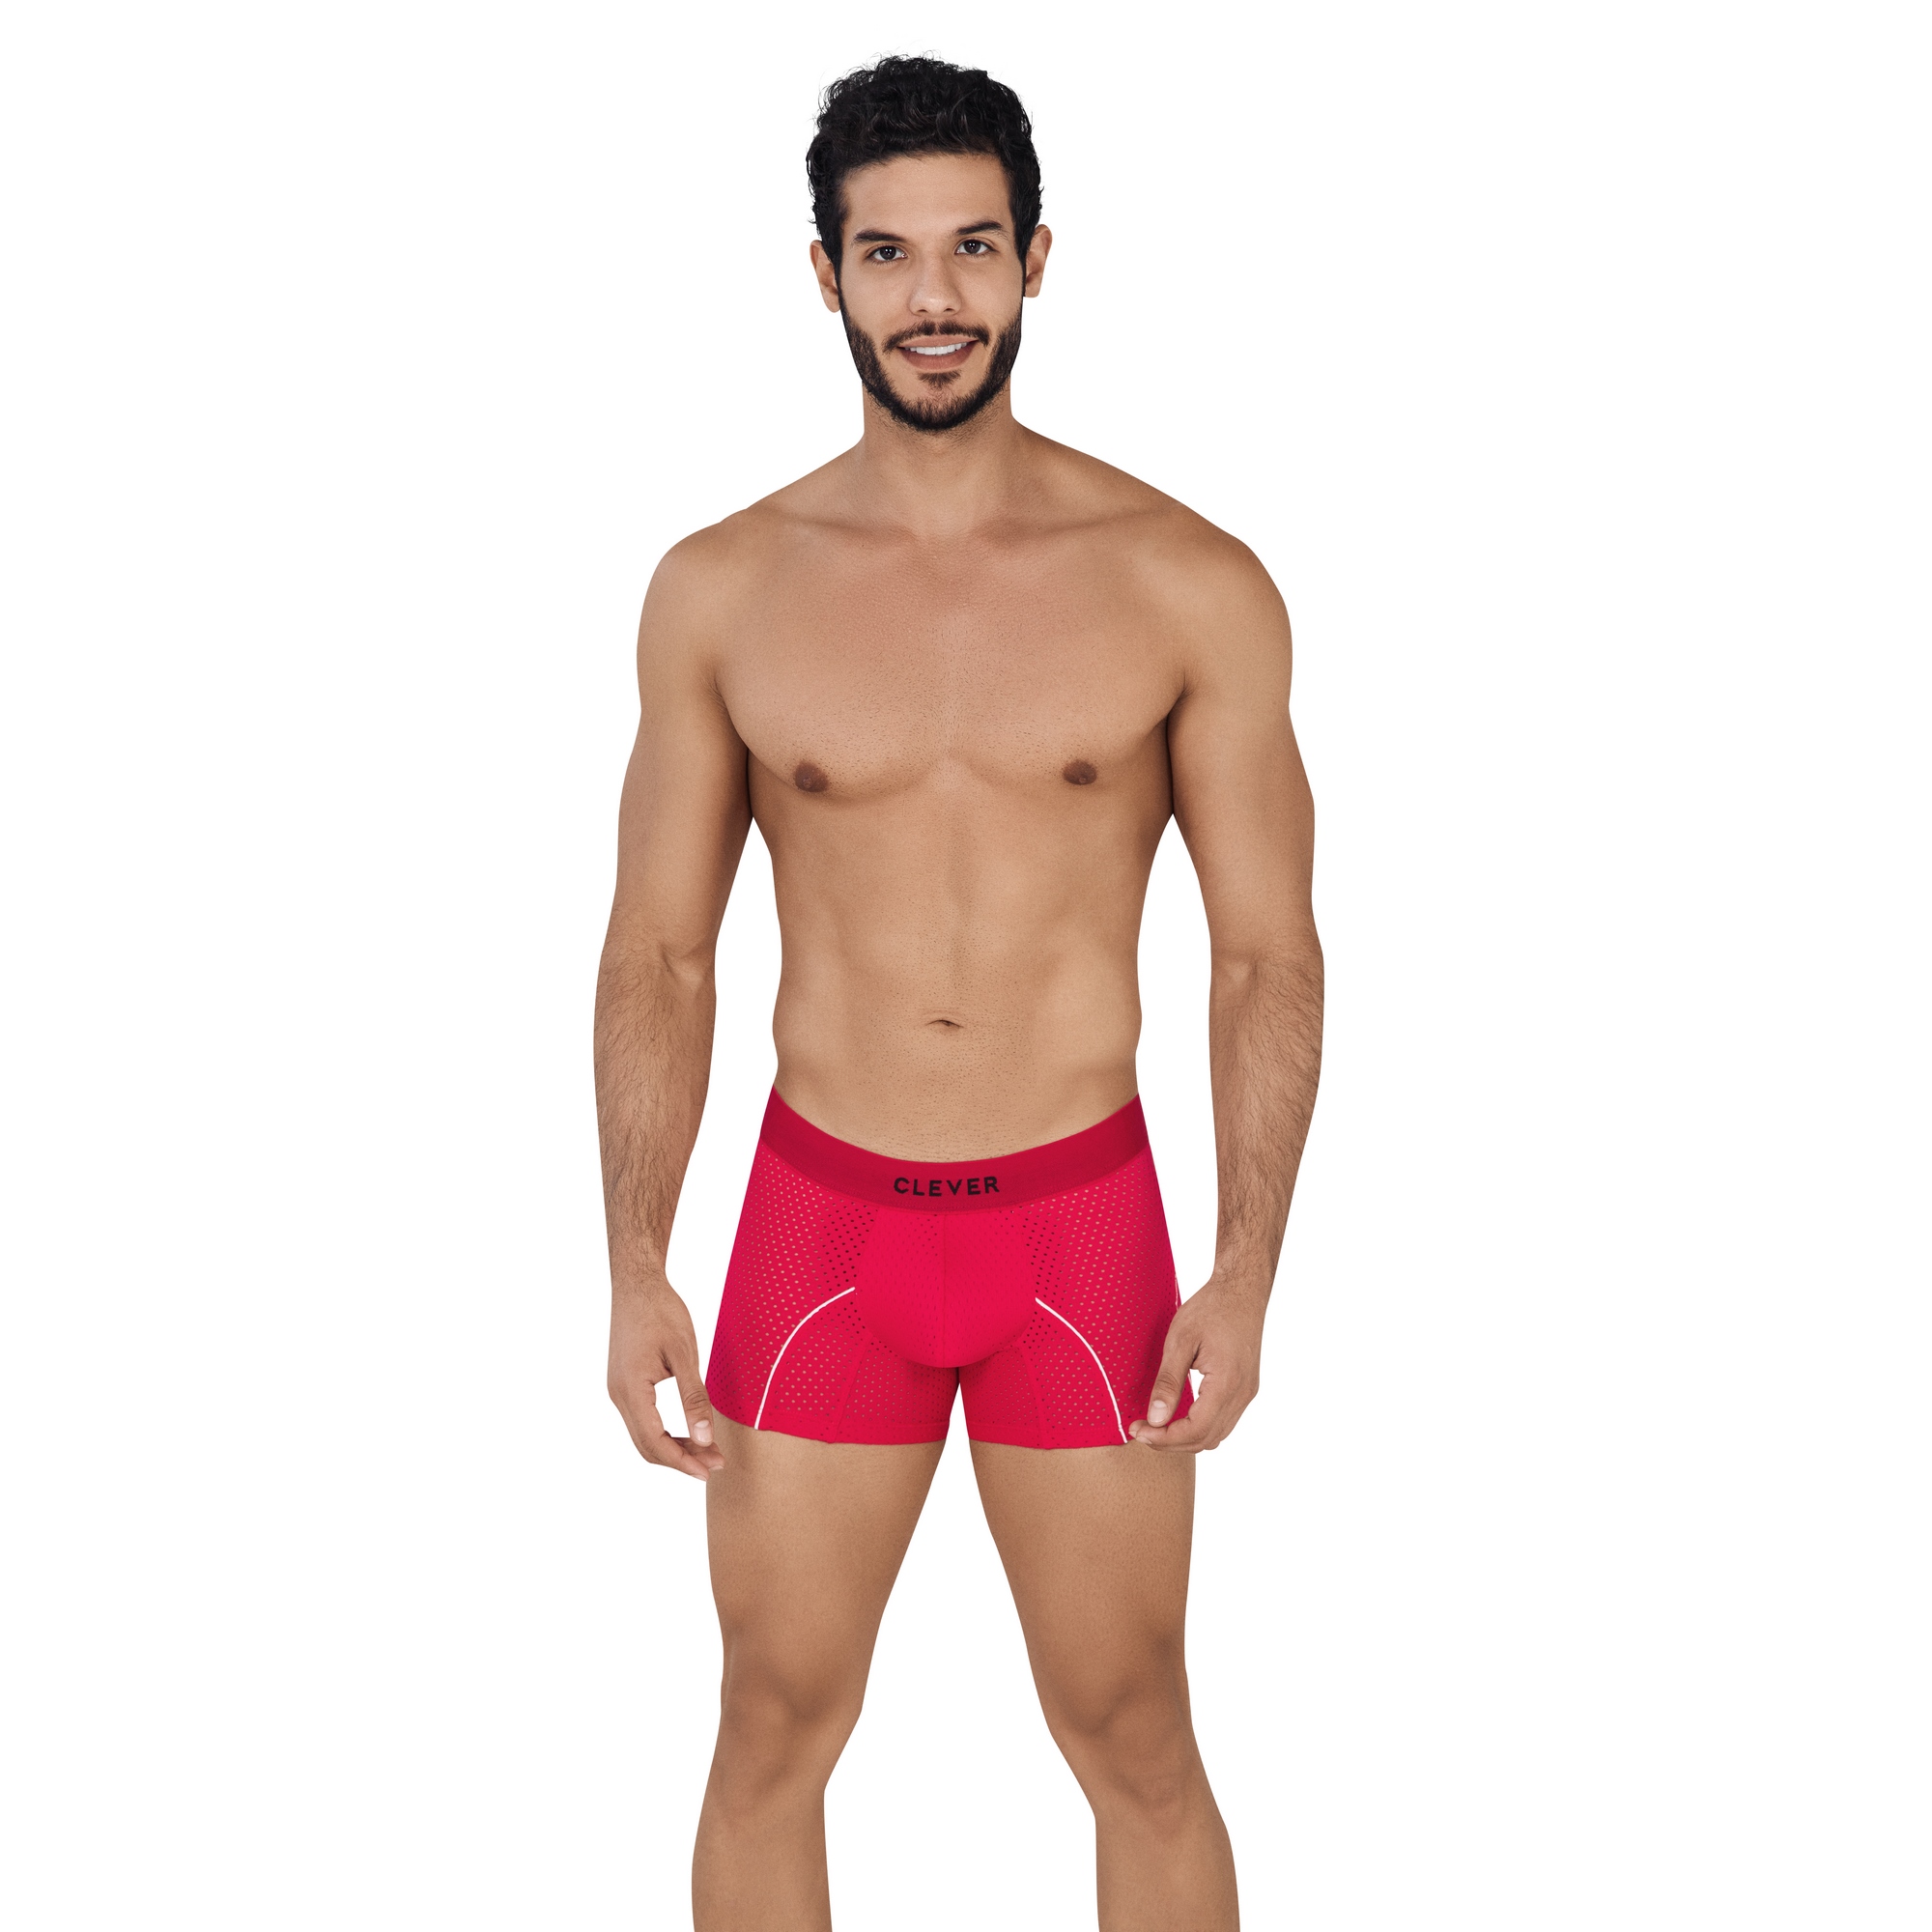 Трусы мужские Clever Masculine Underwear 0619 красные M